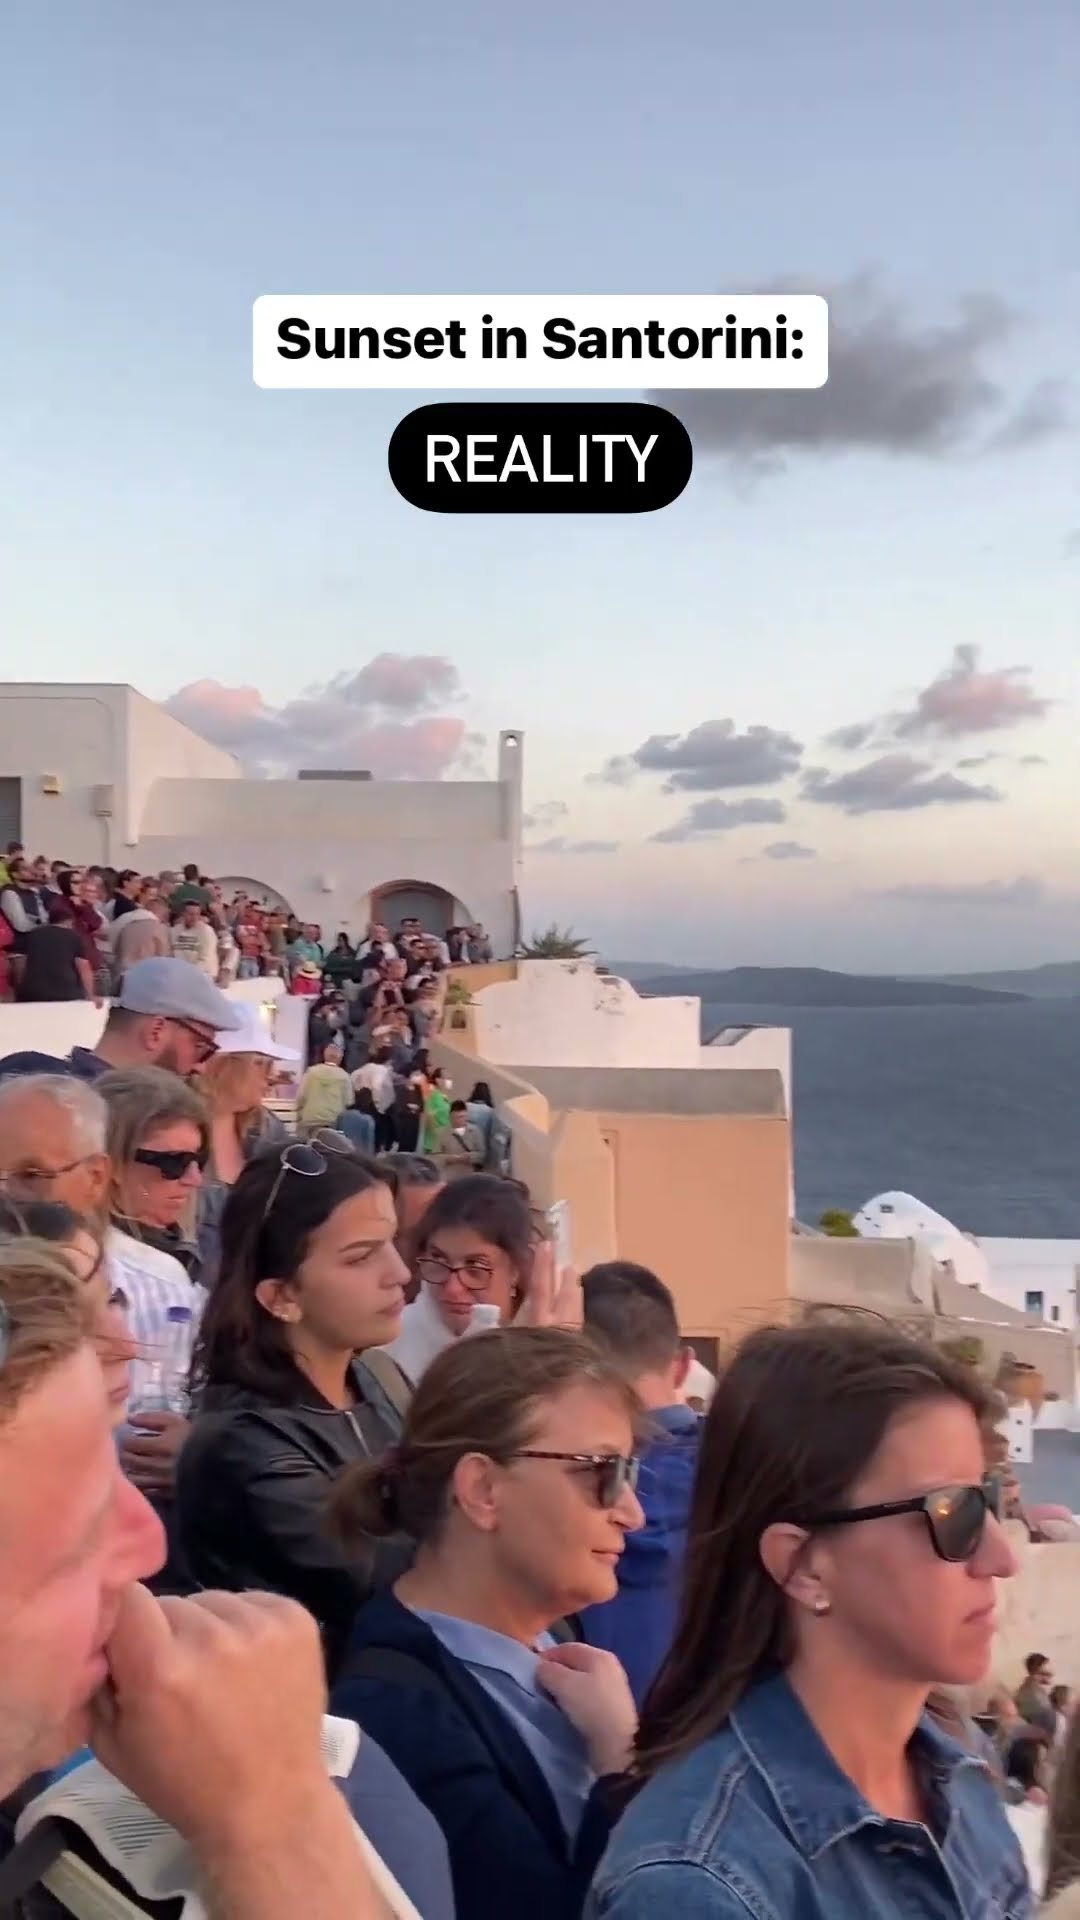 Das Geheimnis von Santorini | Doku HD | ARTE